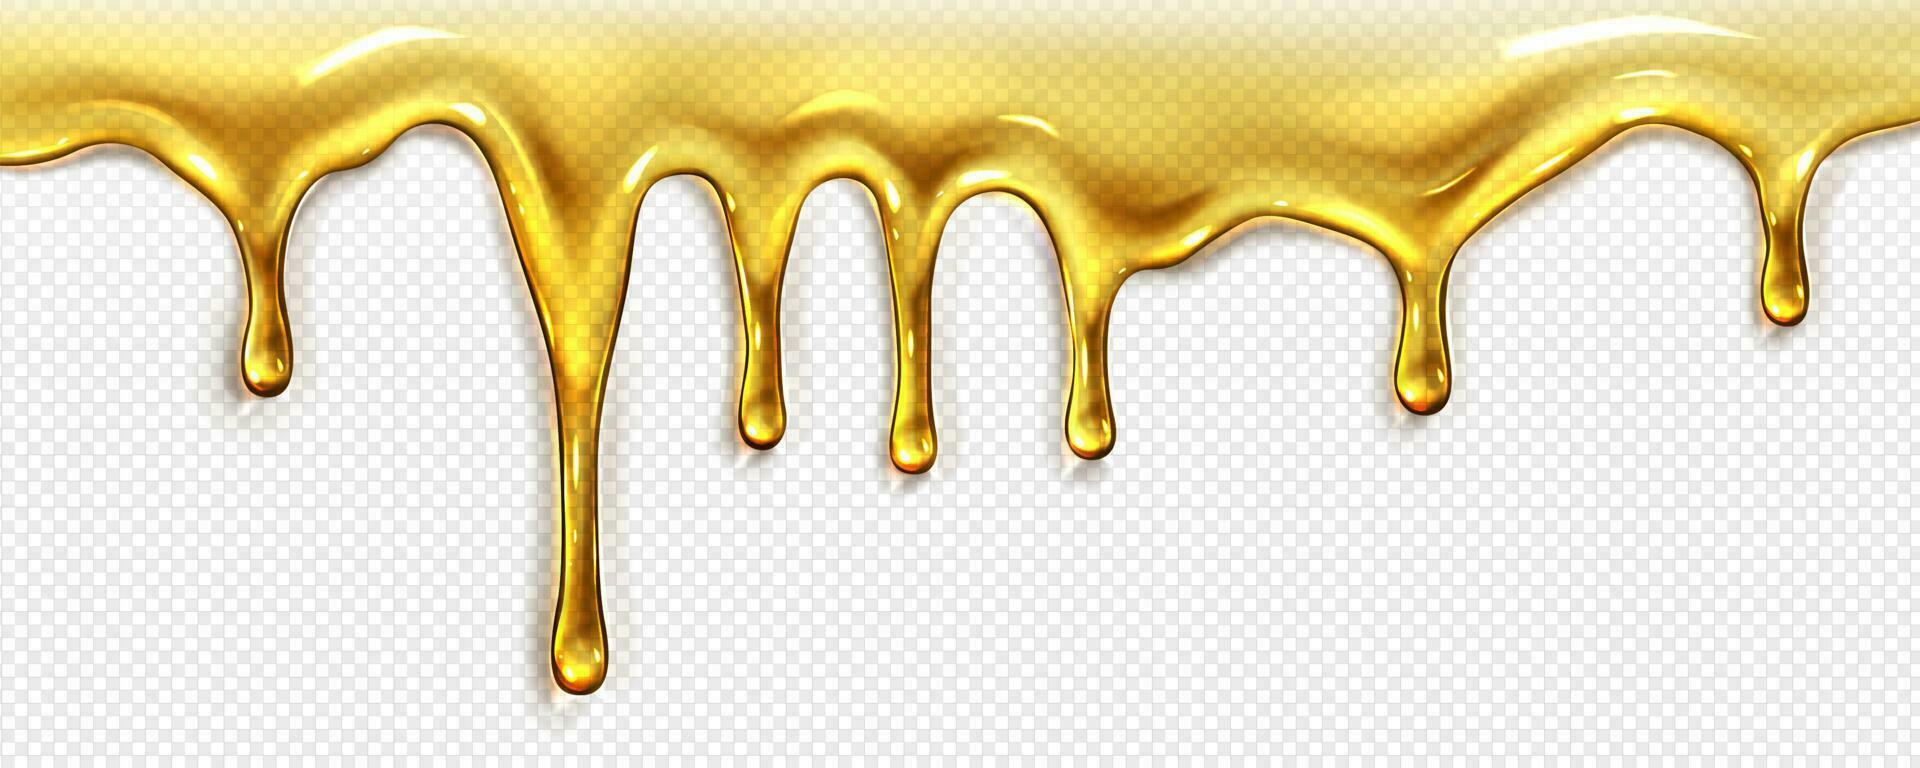 realistisch Öl oder Honig fließen vektor